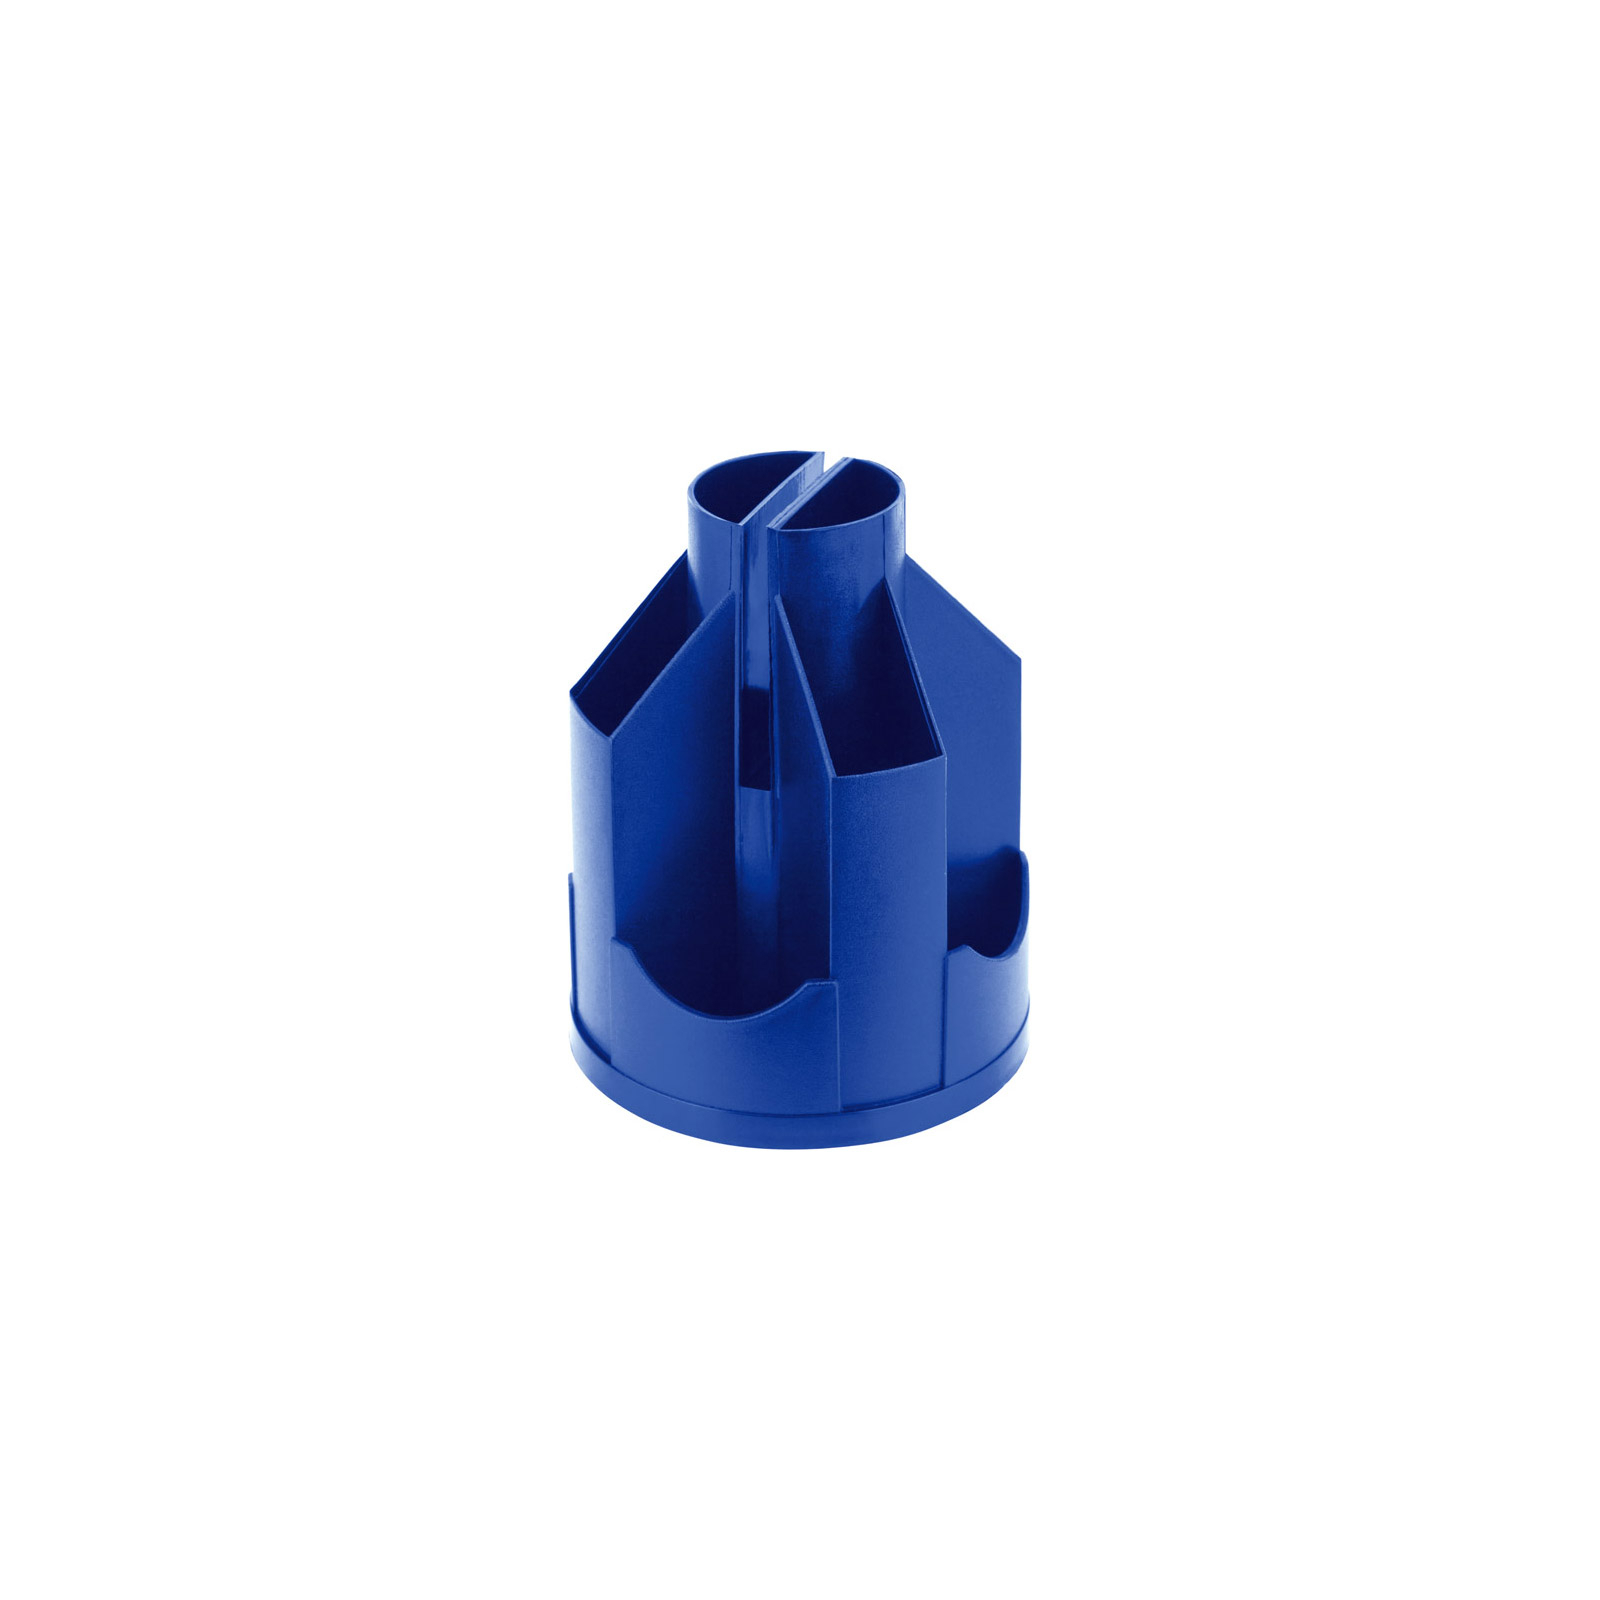 Підставка для дрібниць Axent органайзер D3003 (мал.) синій (D3003-02)